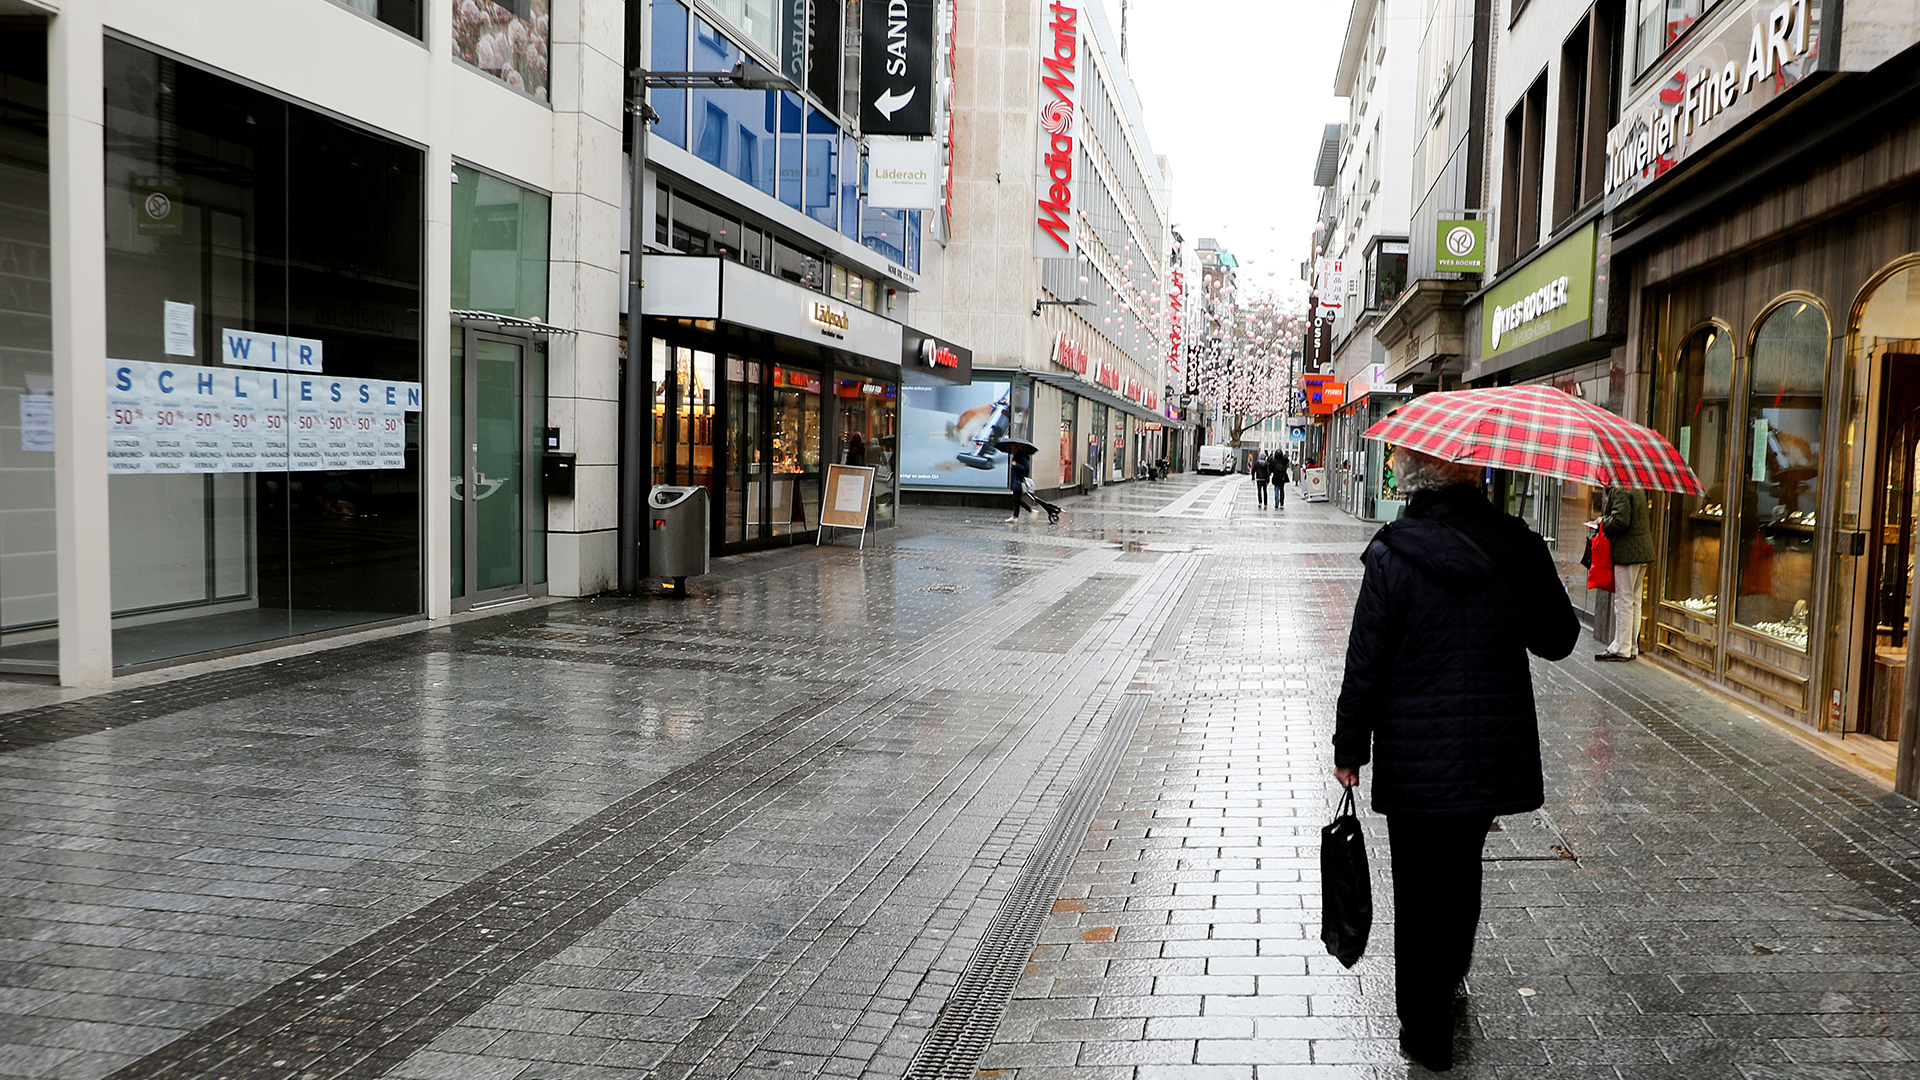 Eine Frau geht durch die leere Fußgängerzone Hohe Straße in Köln, an einem Schaufenster steht "Wir schließen"